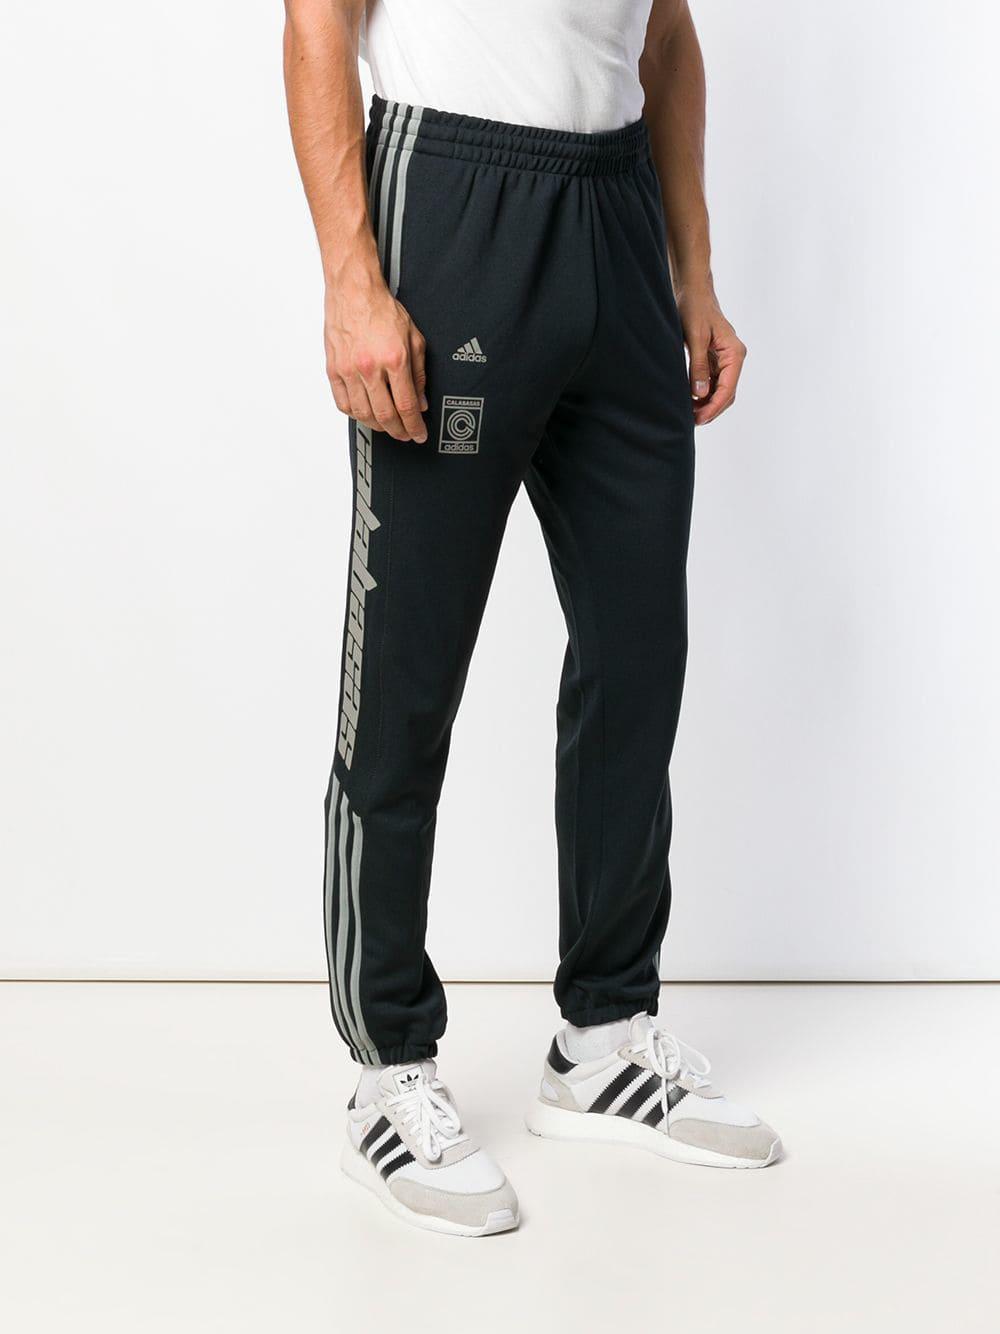 pantalones calabasas adidas where can i buy fa355 aaf54